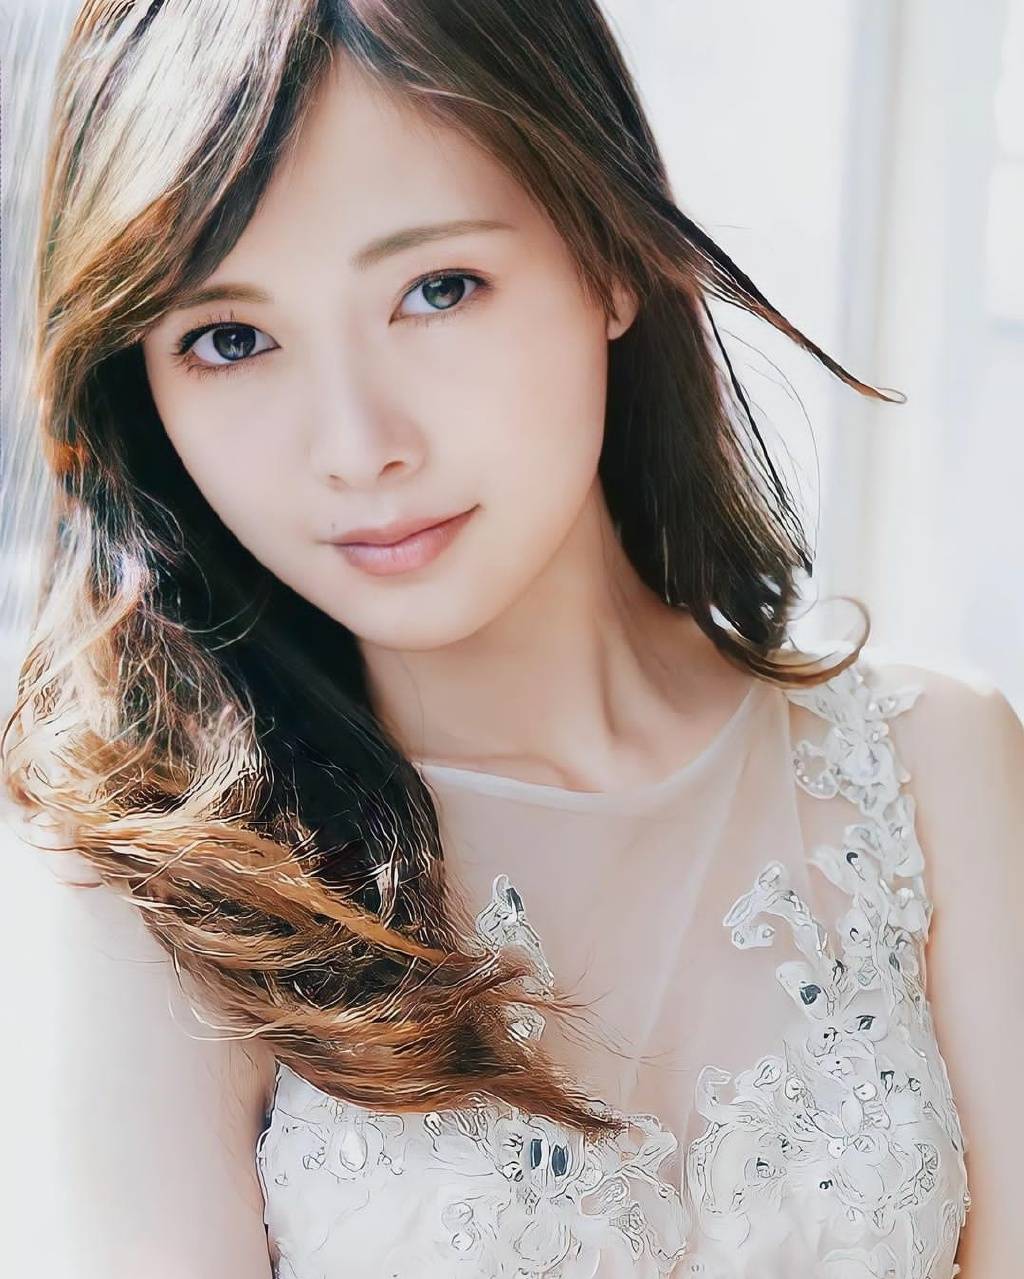 日本女星白石麻衣写真超明艳！肤白貌美大长腿性感靓丽